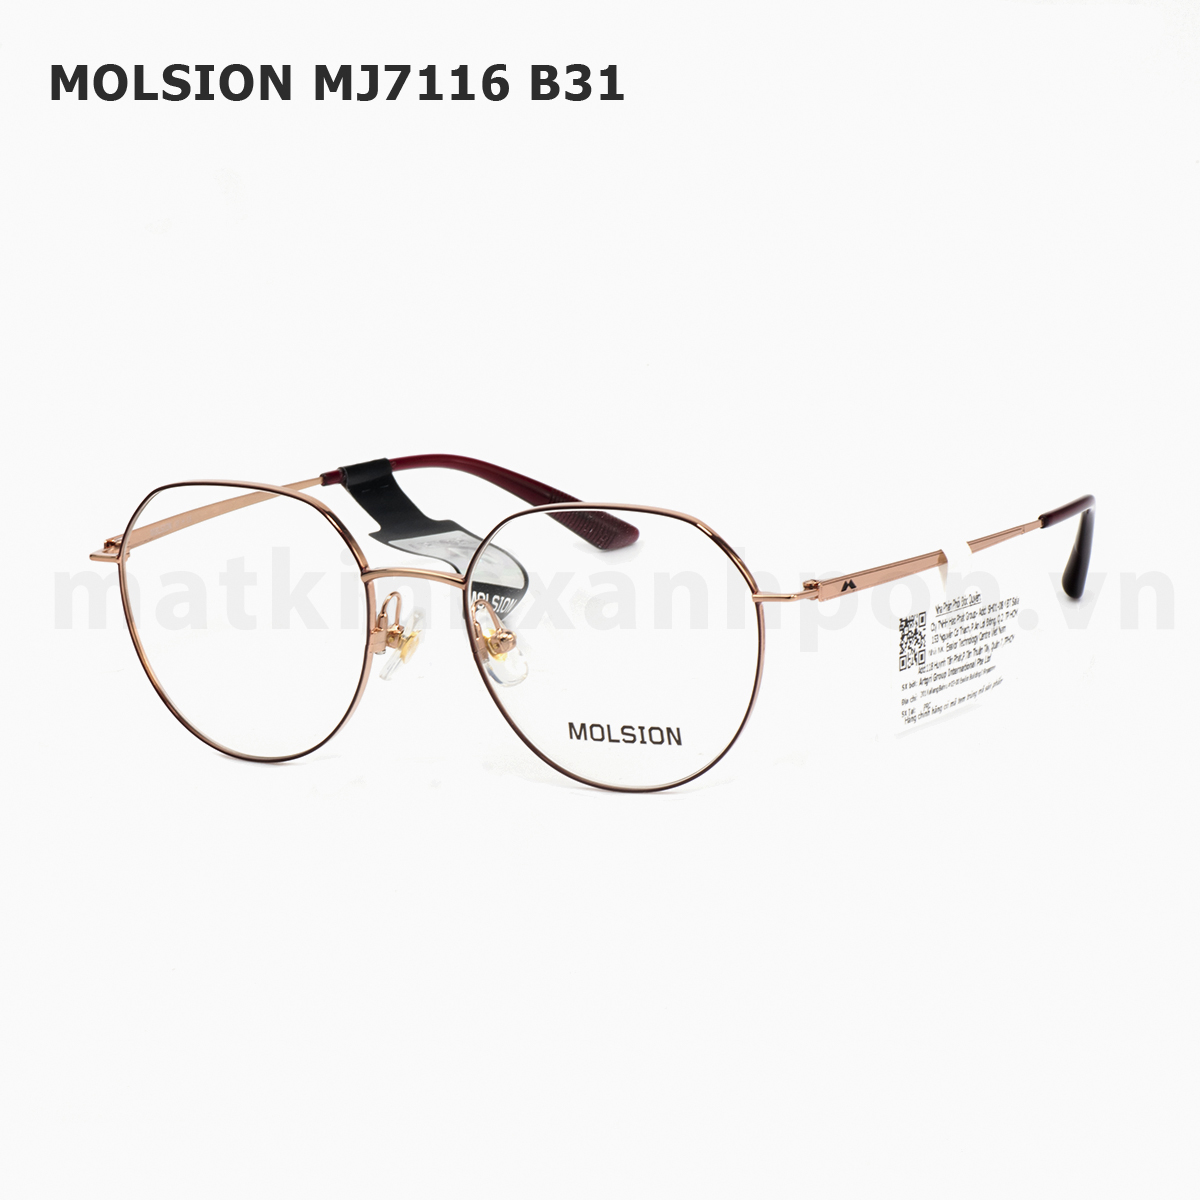 Molsion MJ7116 B31